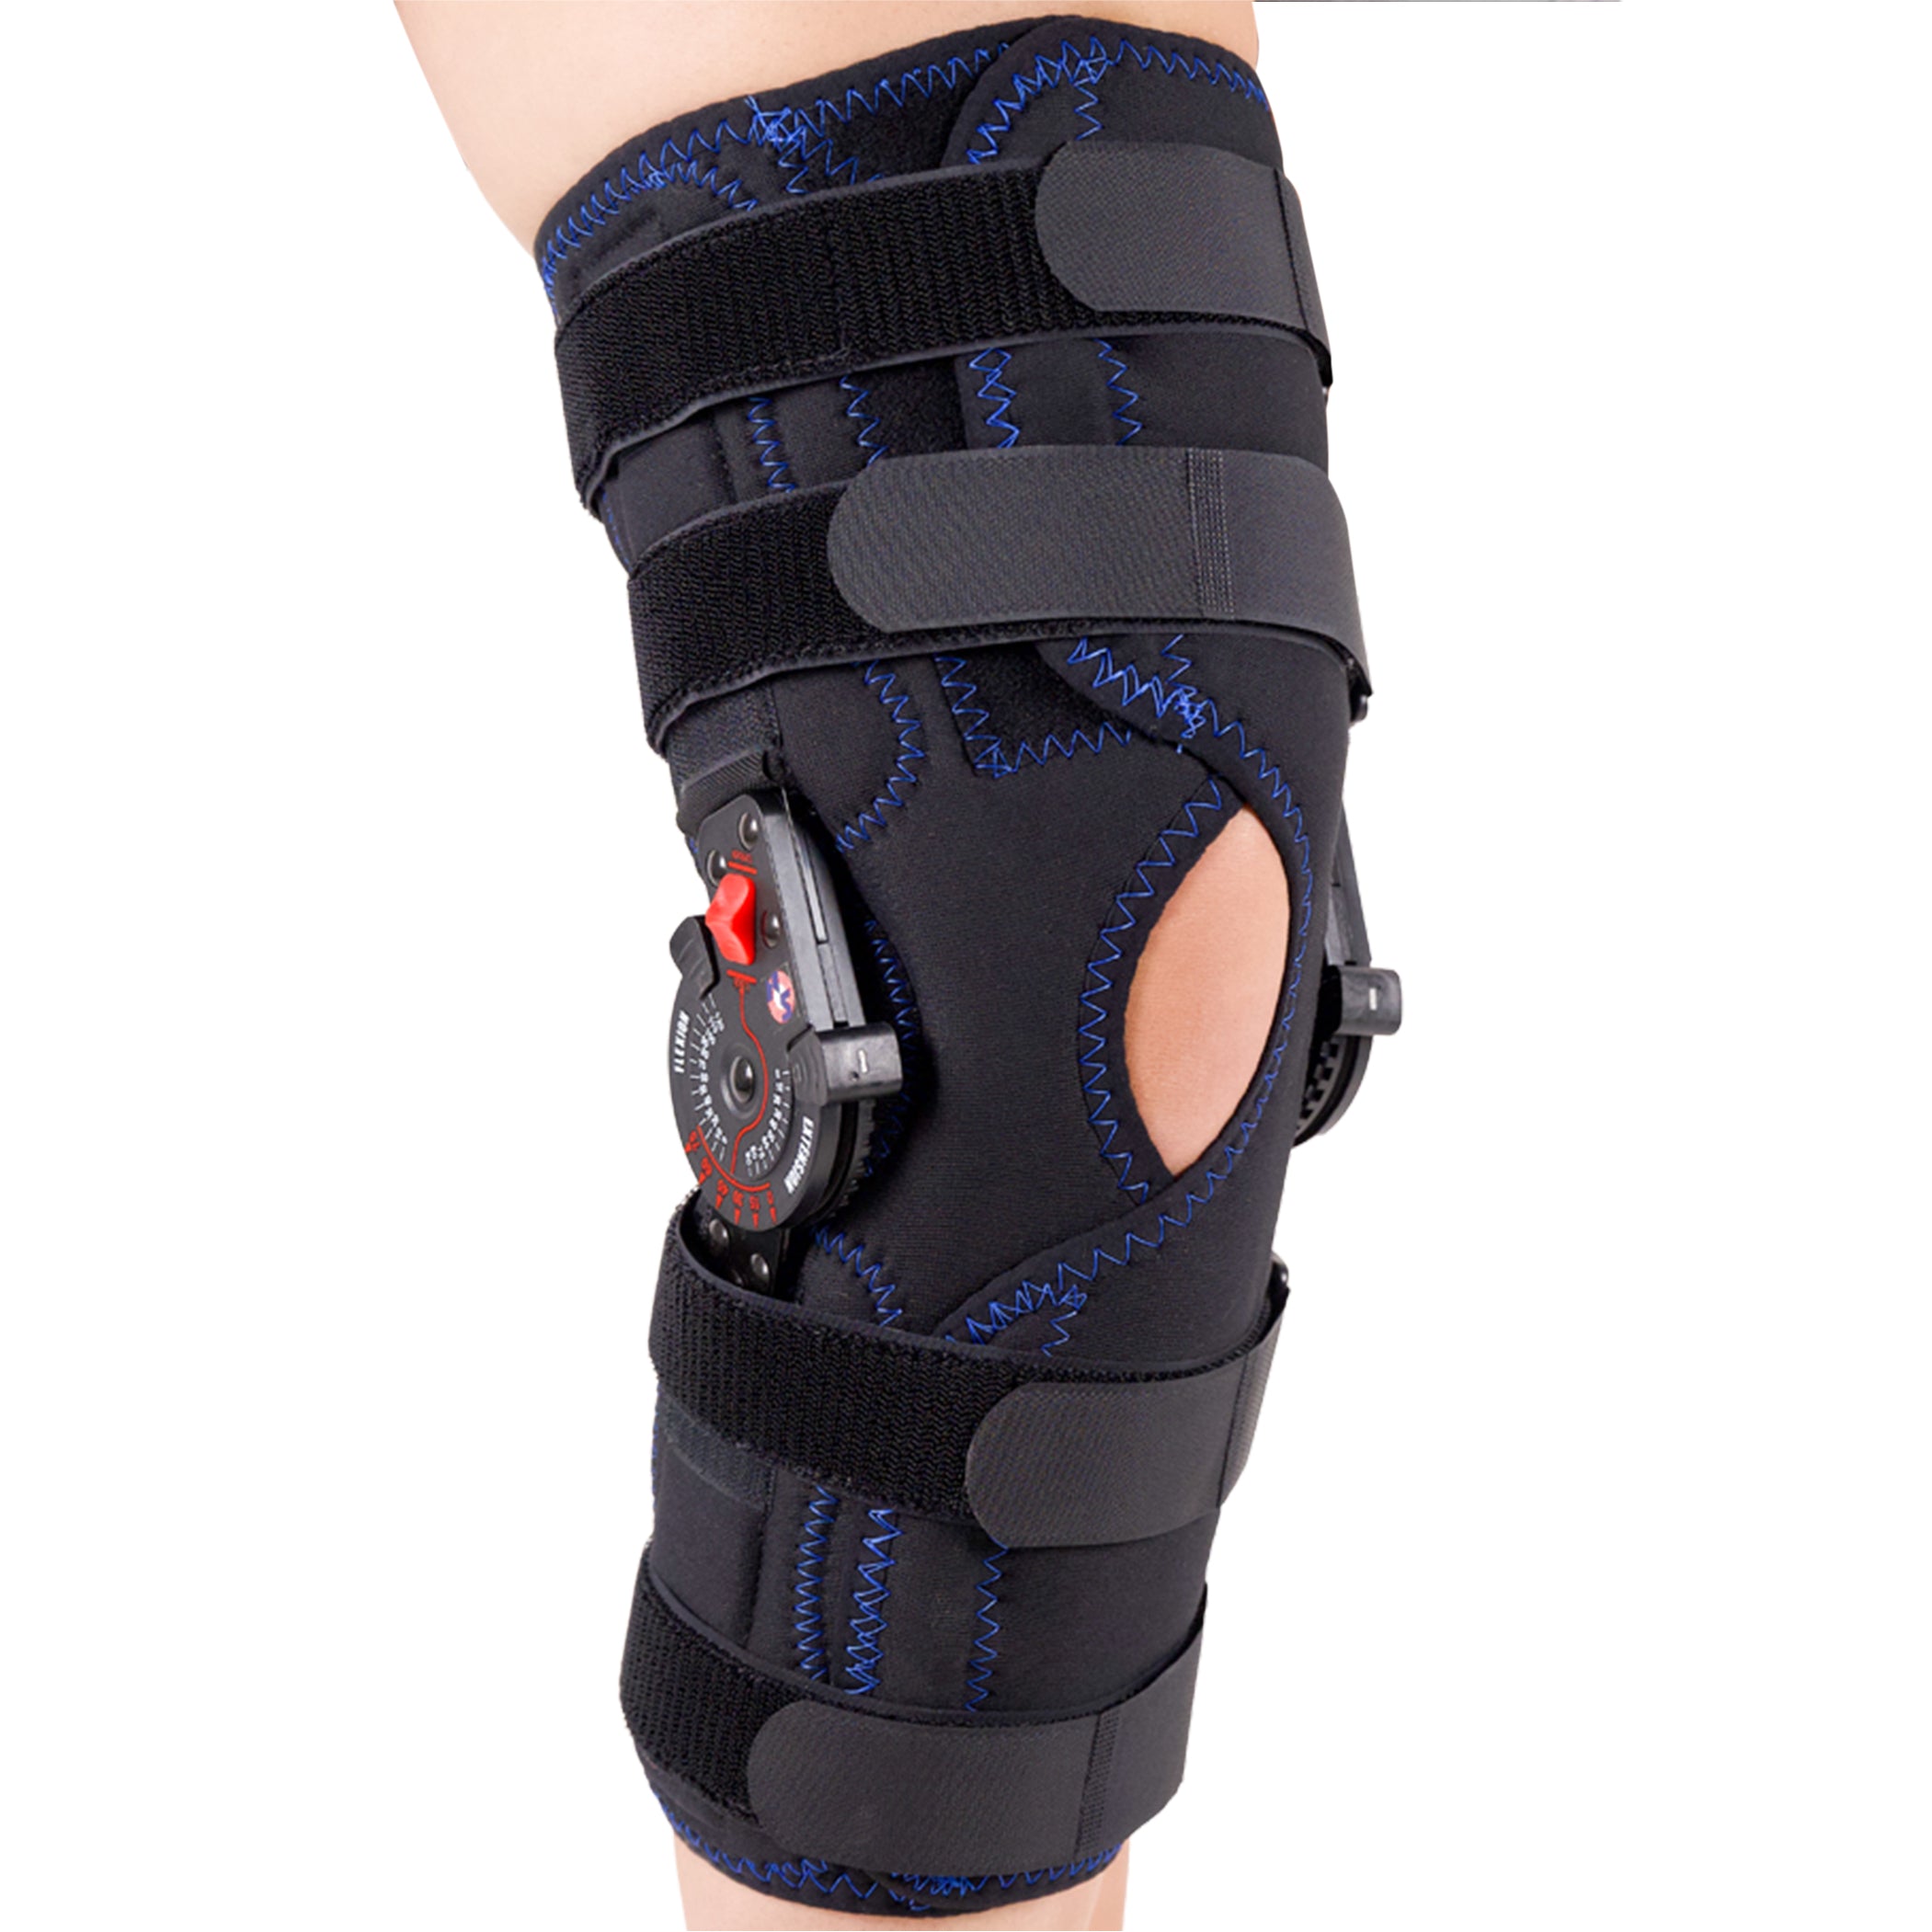 PhysioRoom Wrap Around Hinged Knee Brace